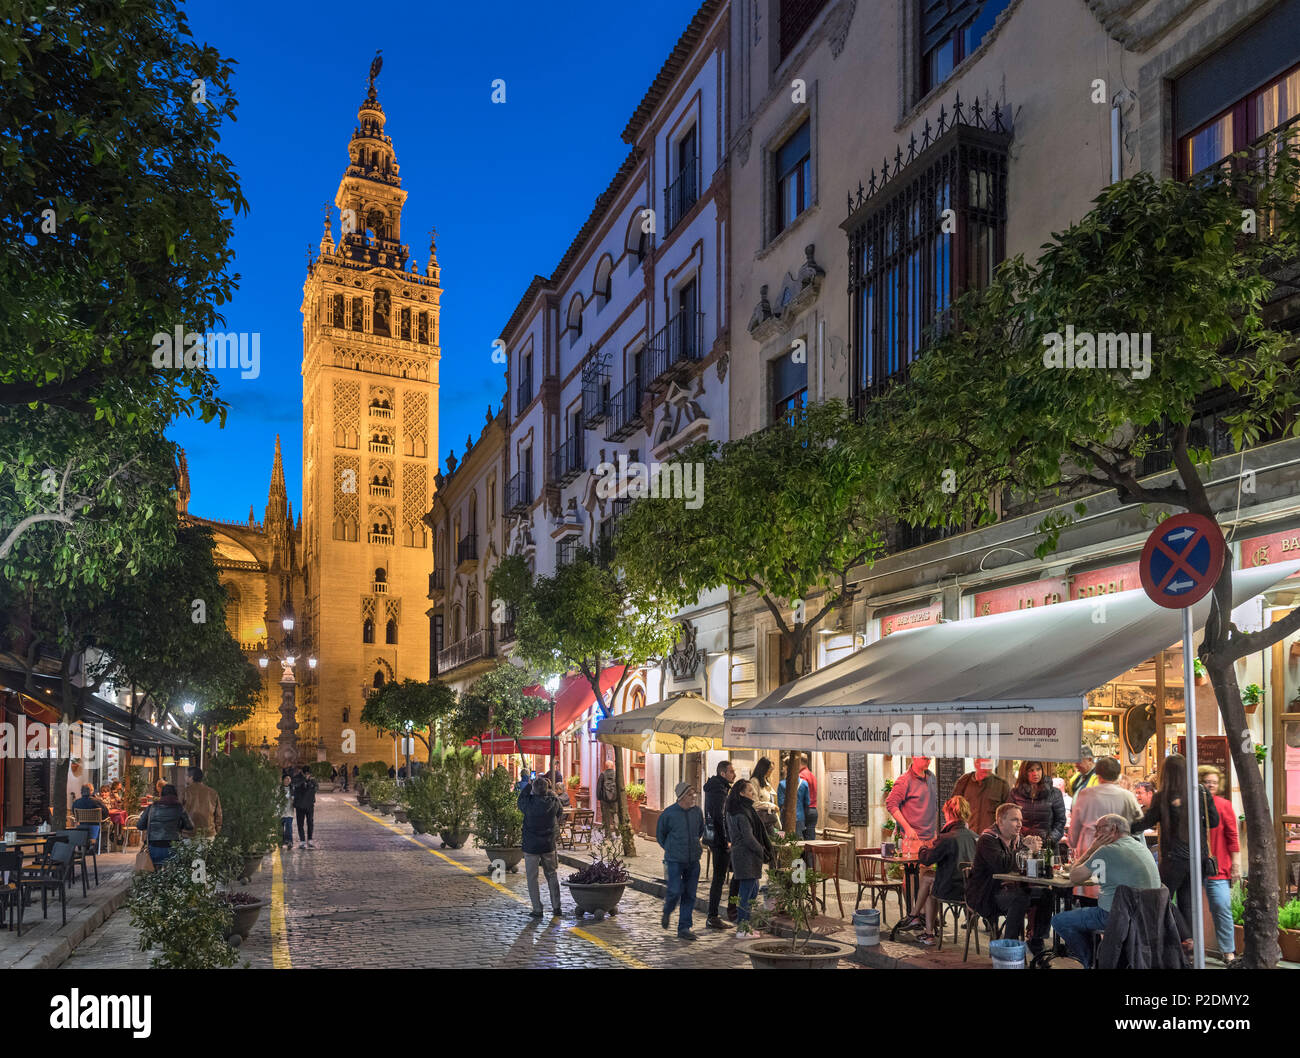 Sevilla, Spanien. Cafés in der Calle Mateos Gago in der Nacht in Richtung der Giralda und der Kathedrale, Barrio Santa Cruz, Sevilla, Andalusien, Spanien Stockfoto